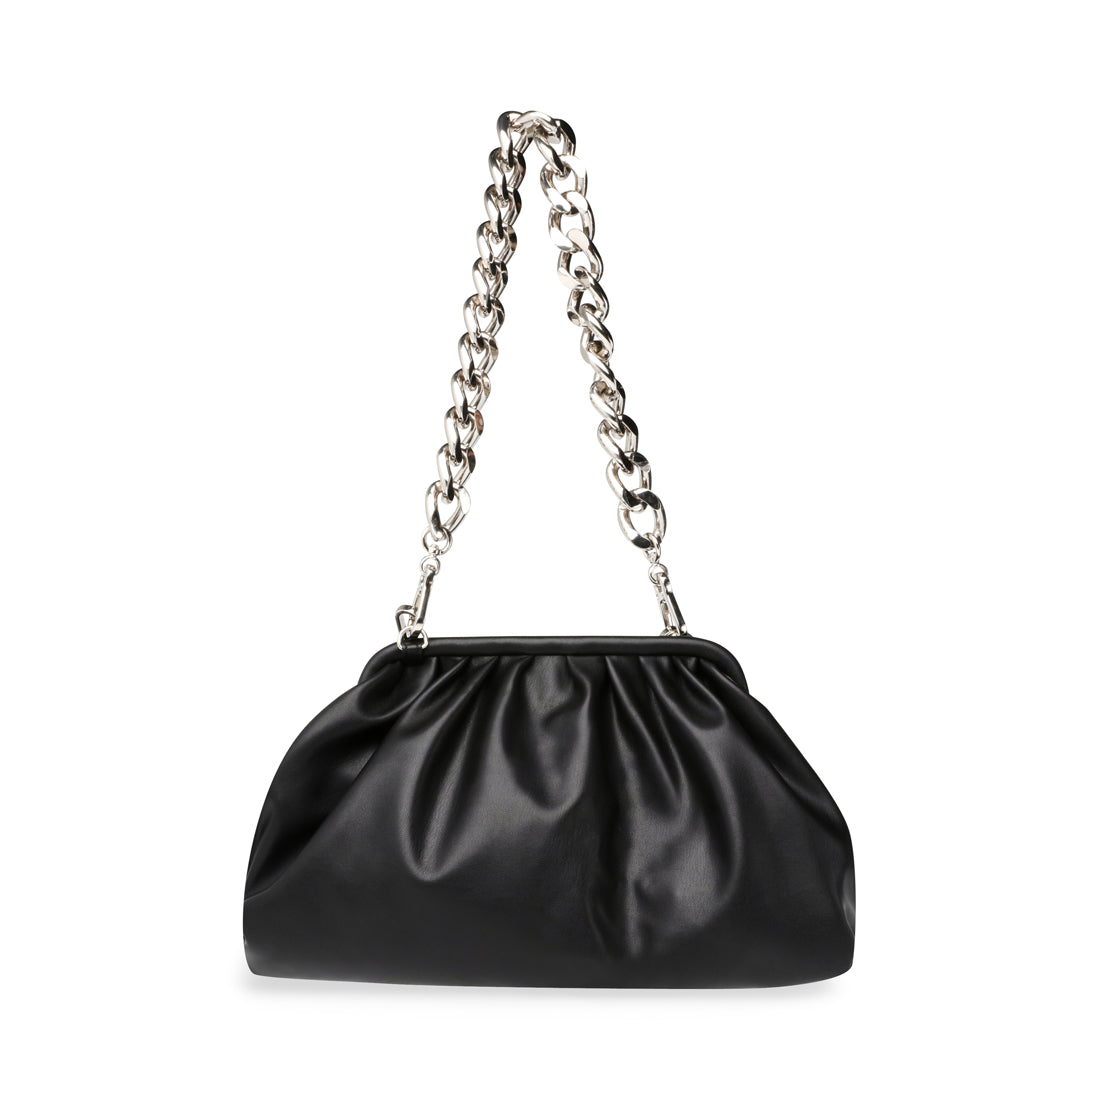 Steve Madden - Authenticated Handbag - Synthetic Black Plain for Women, Never Worn